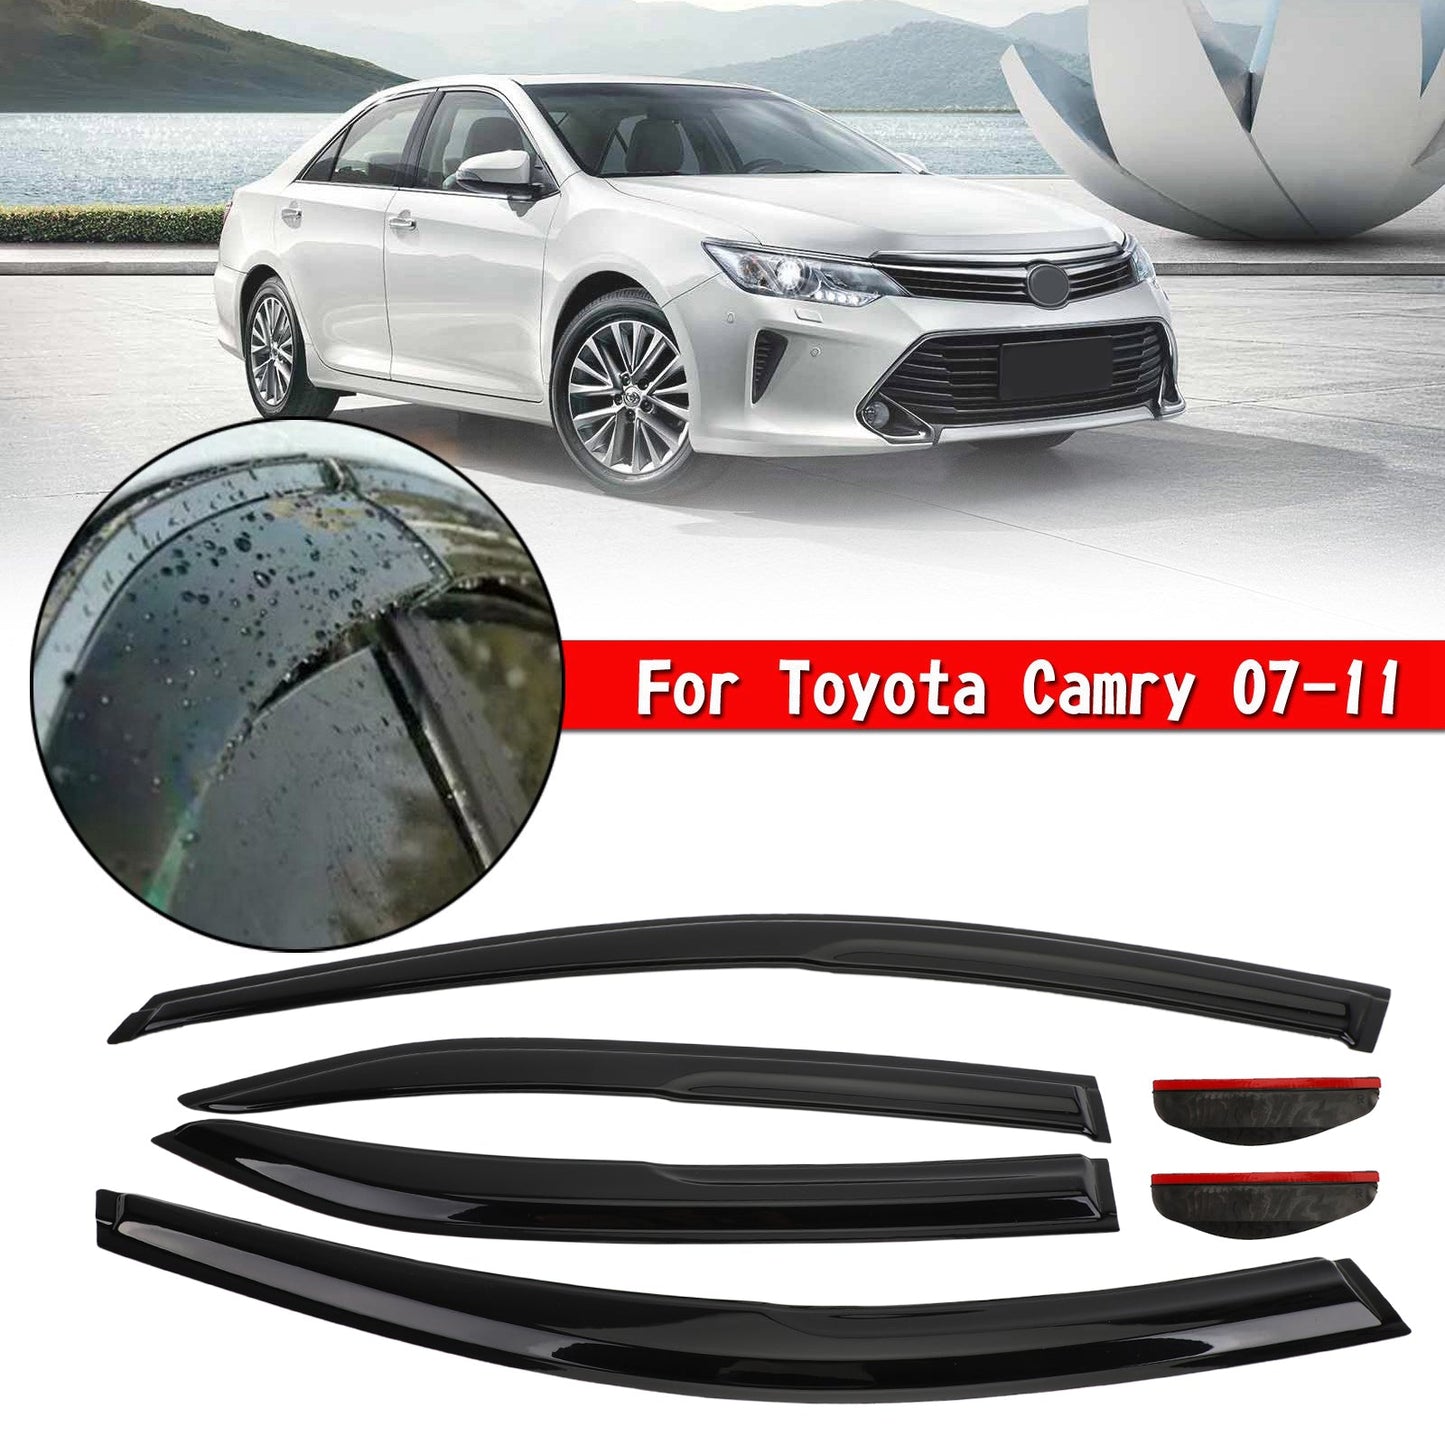 Toyota Camry 07-11 Kit de pare-soleil pour fenêtre de voiture 6 pièces